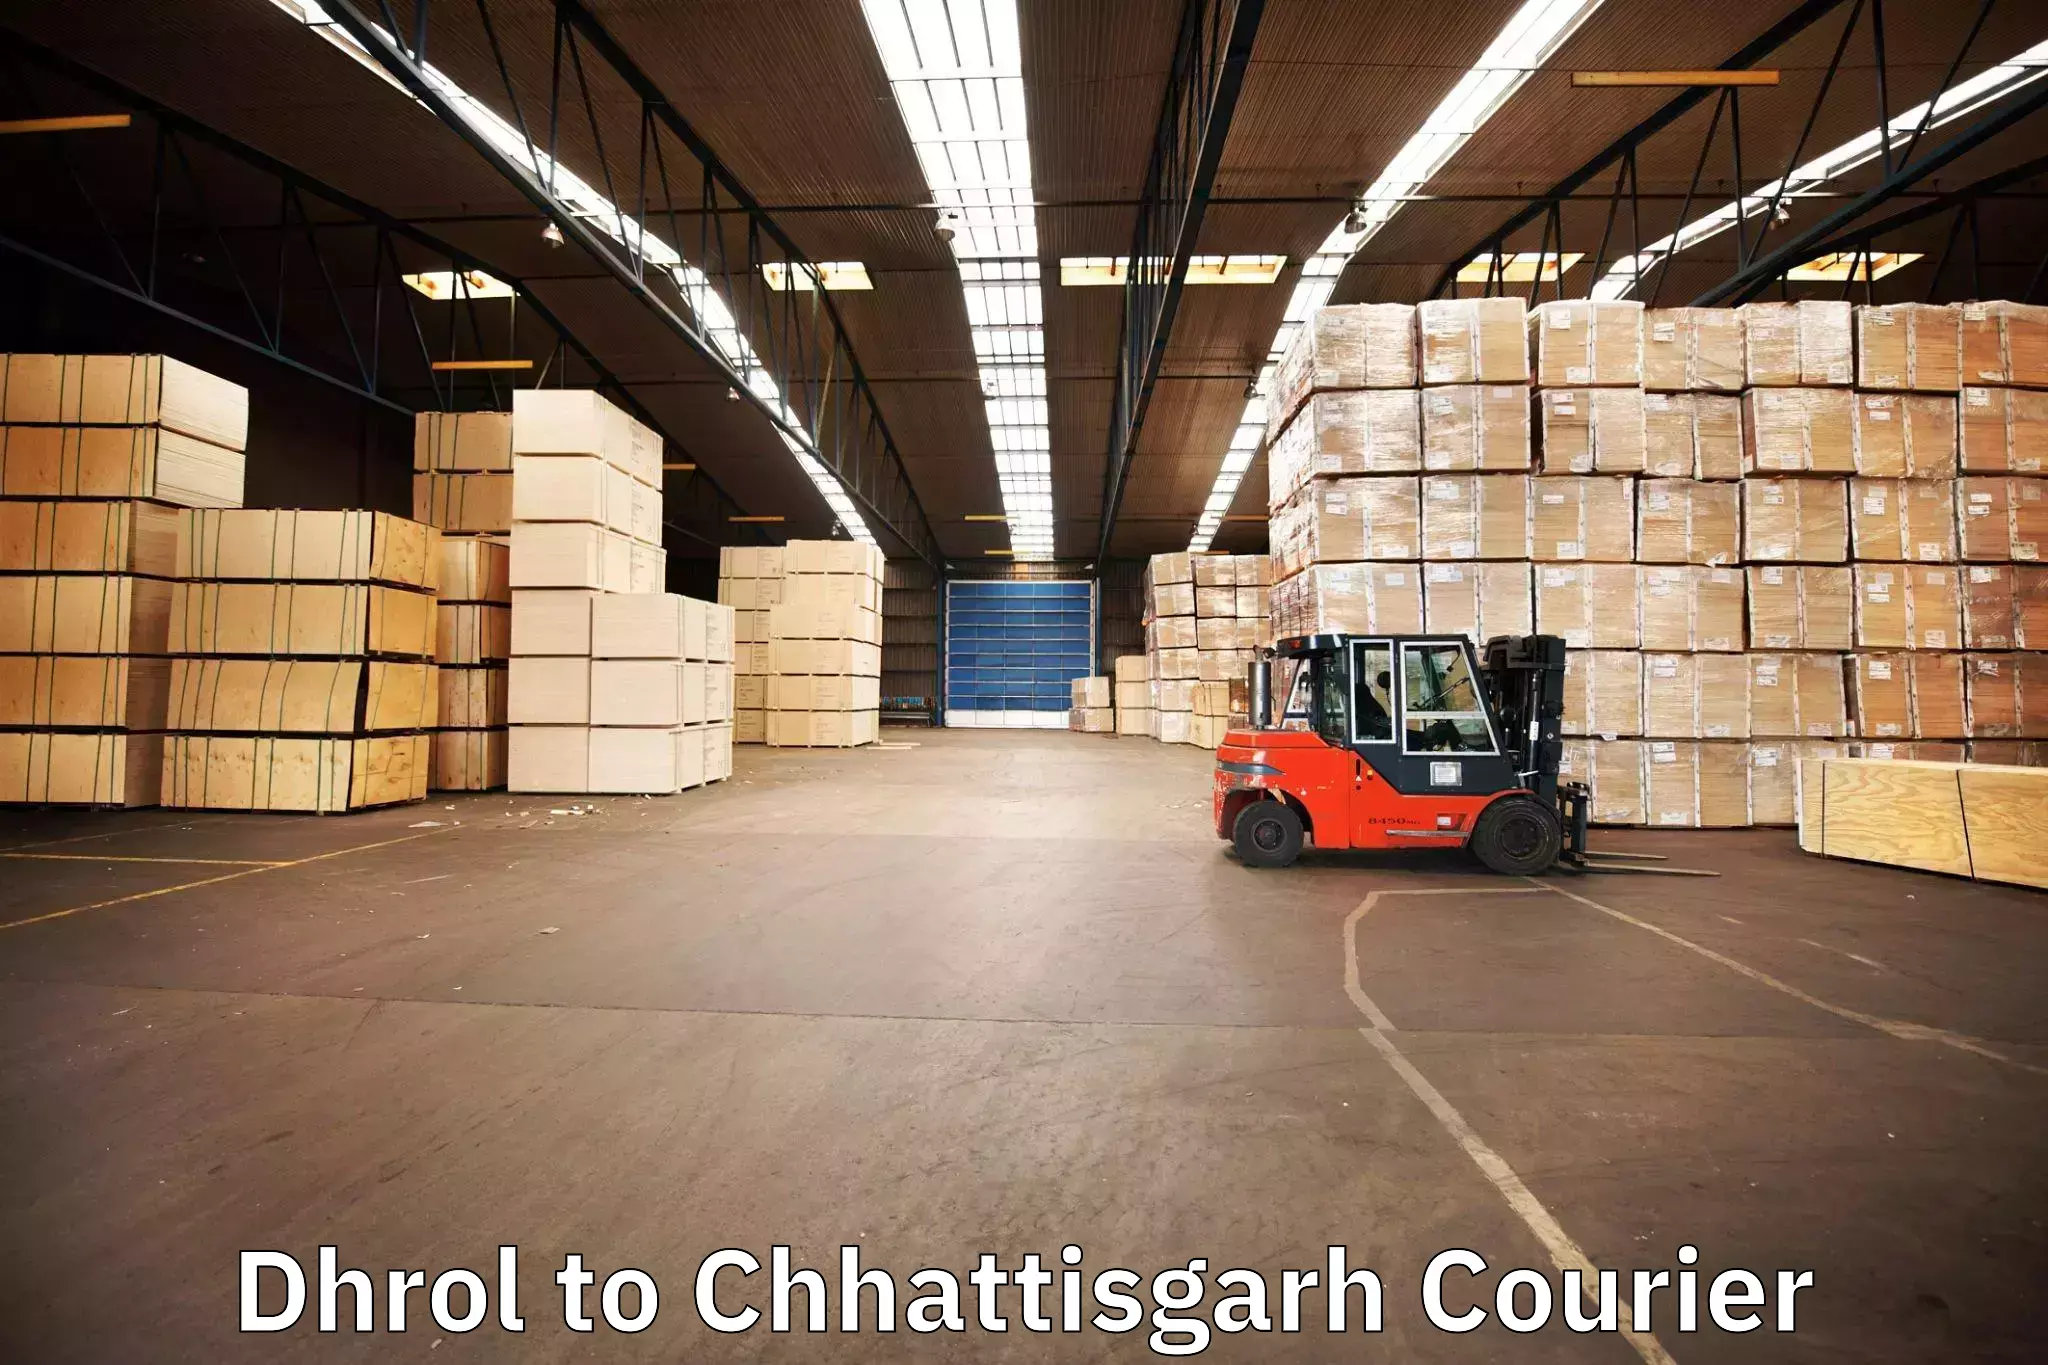 Furniture delivery service Dhrol to Chhattisgarh